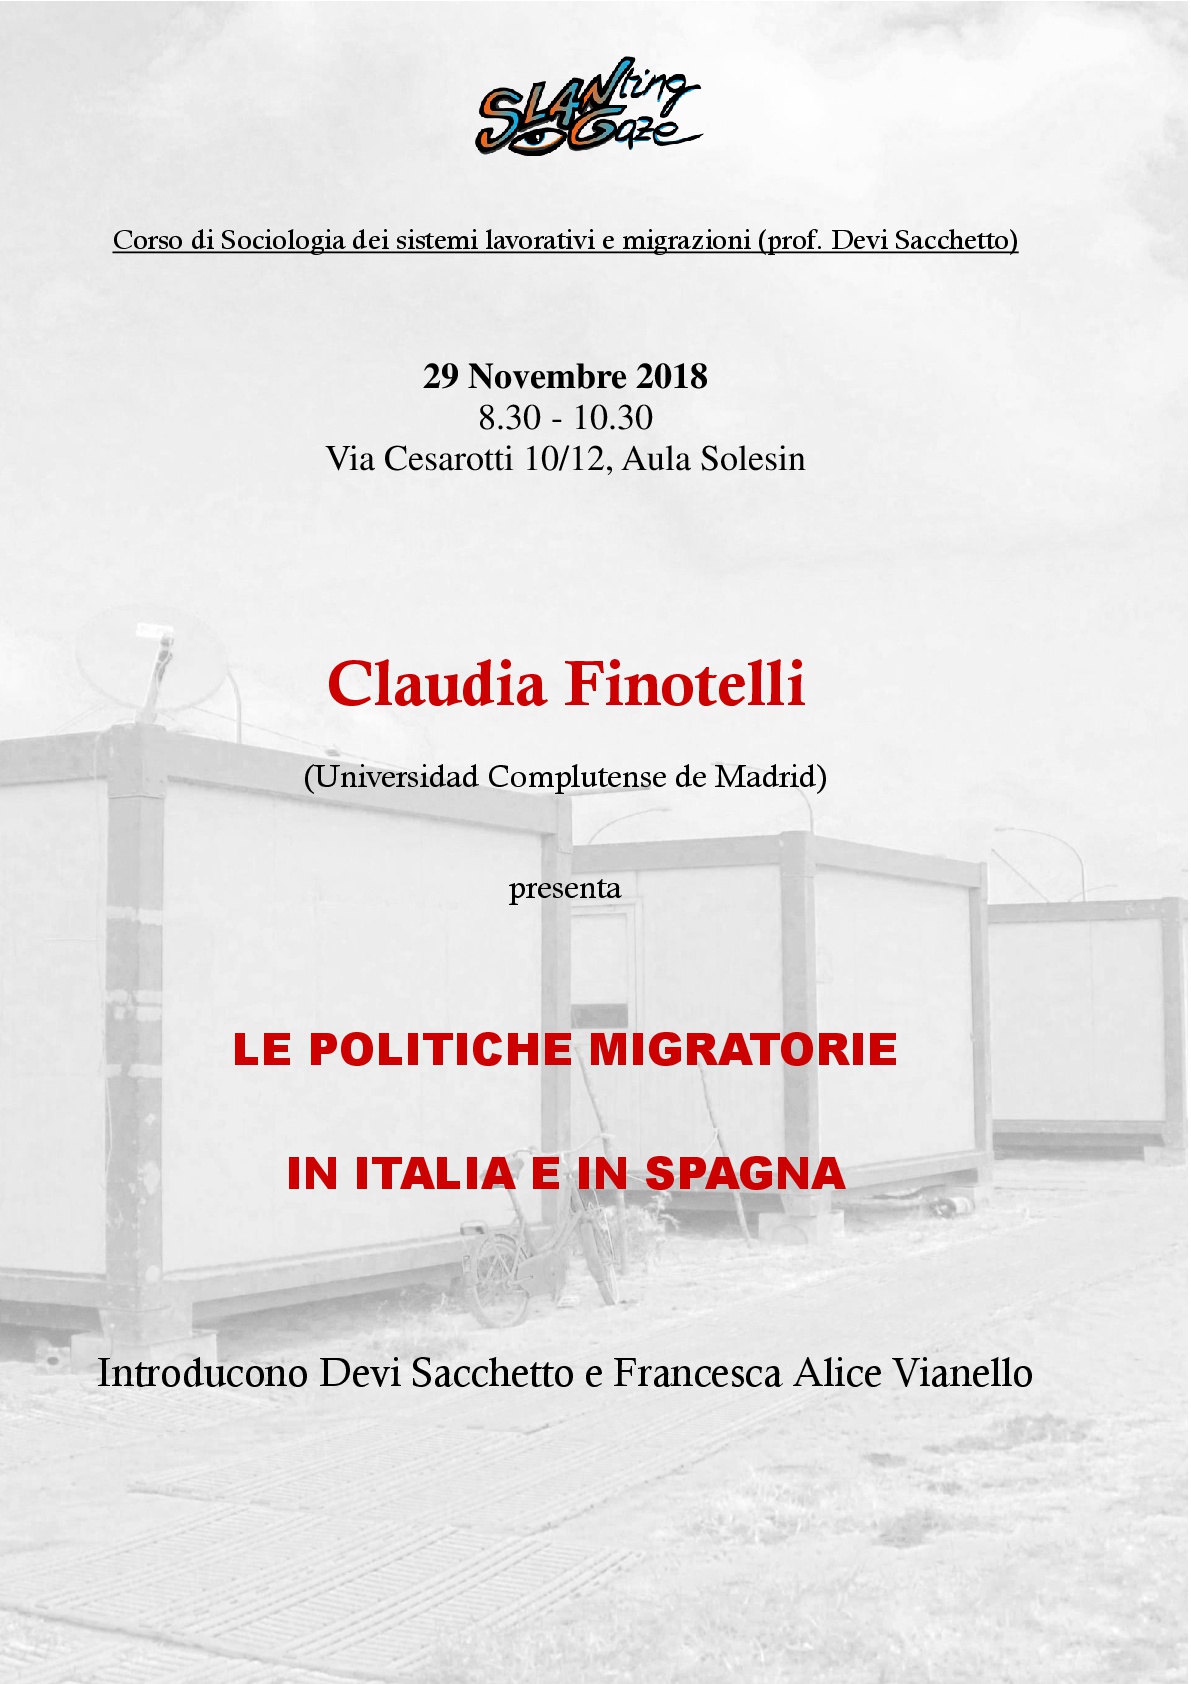 Claudia Finotelli “LE POLITICHE MIGRATORIE IN ITALIA E IN SPAGNA” Thumb